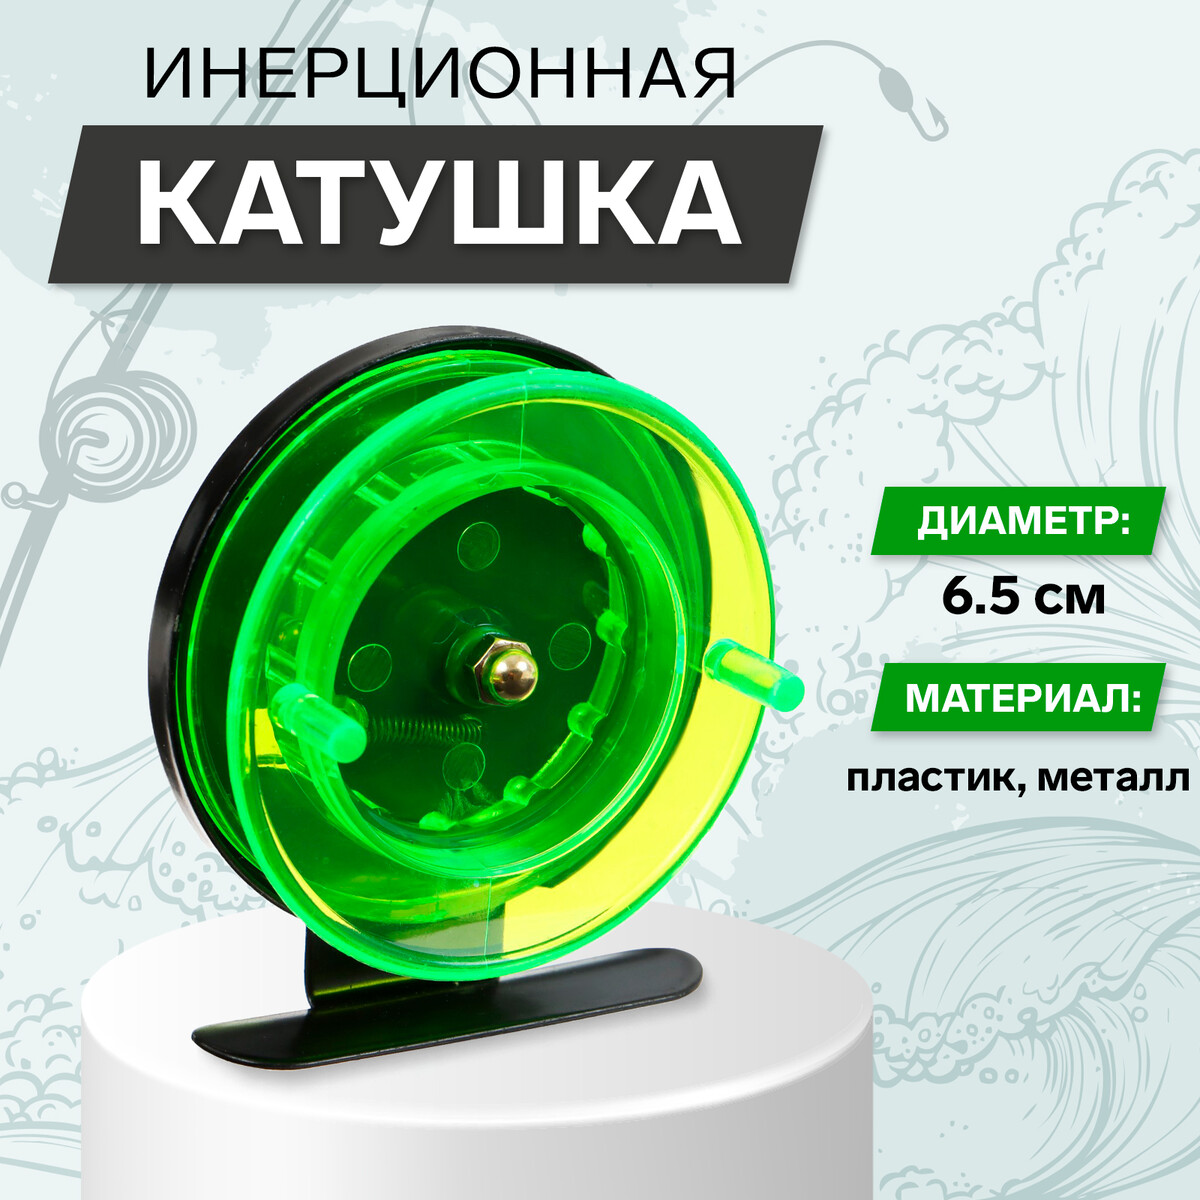 Катушка инерционная, металл пластик, диаметр 6.5 см, цвет черный-зеленый, 701 площадка торцевая металл установочный диаметр 120 мм viento 120пм